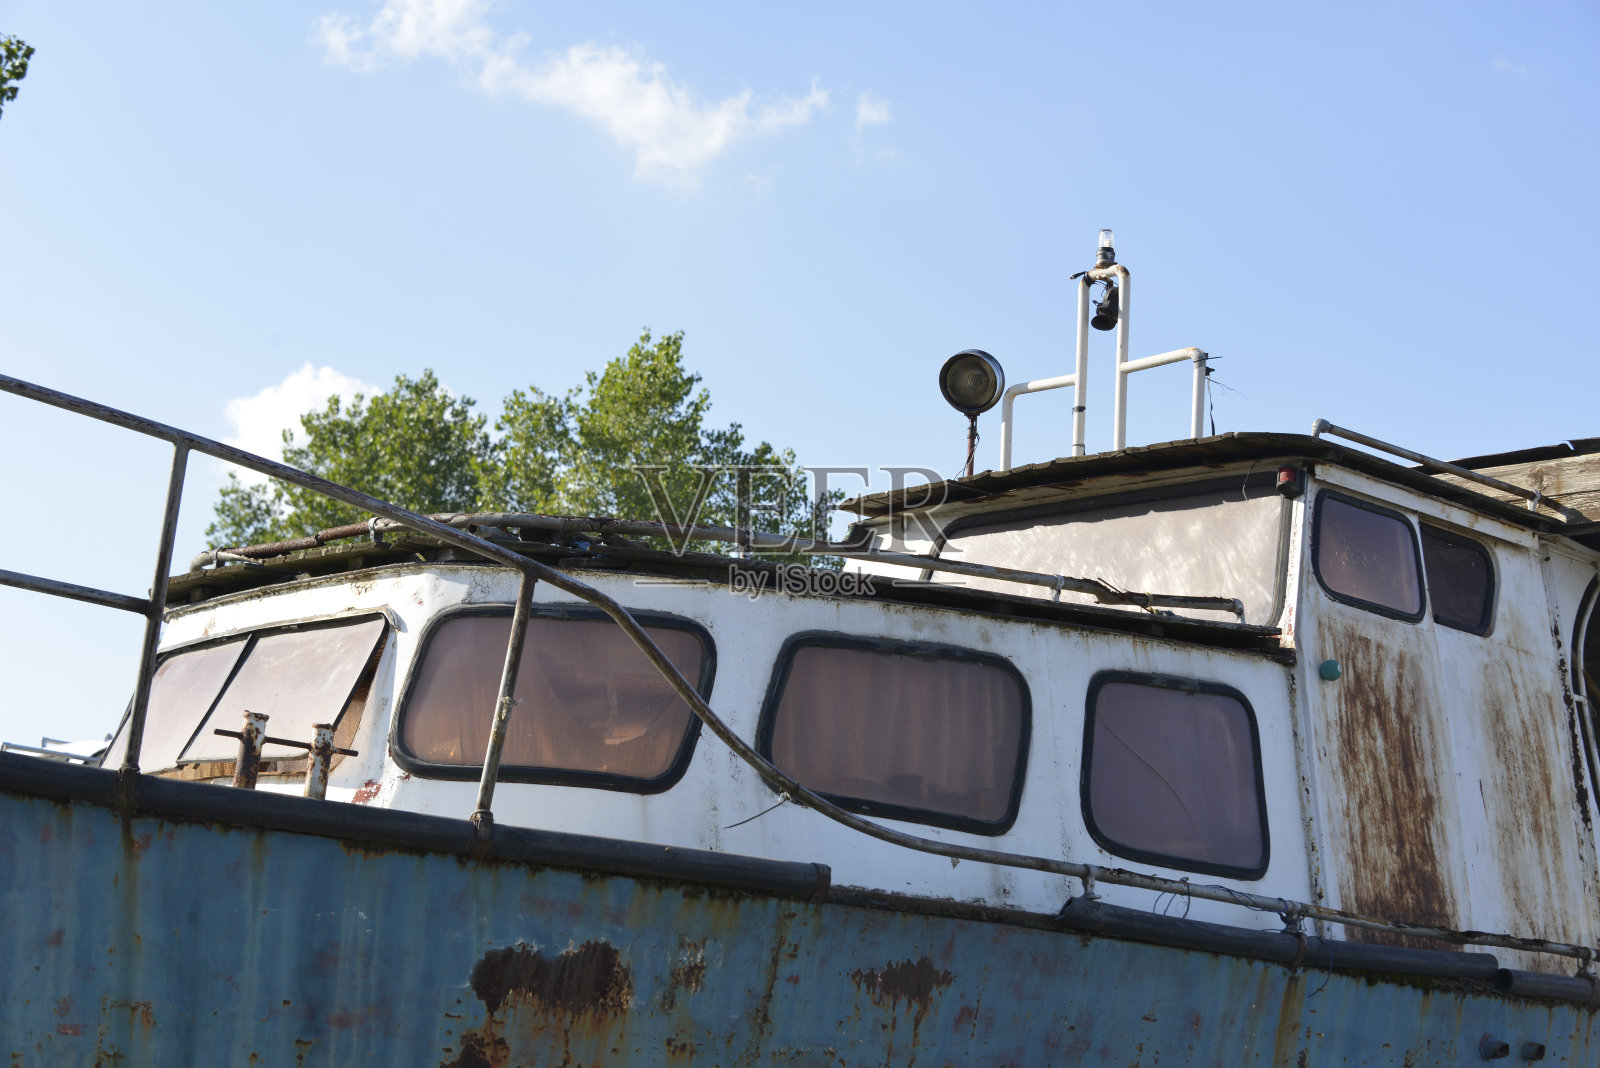 旧渔船的细节照片摄影图片